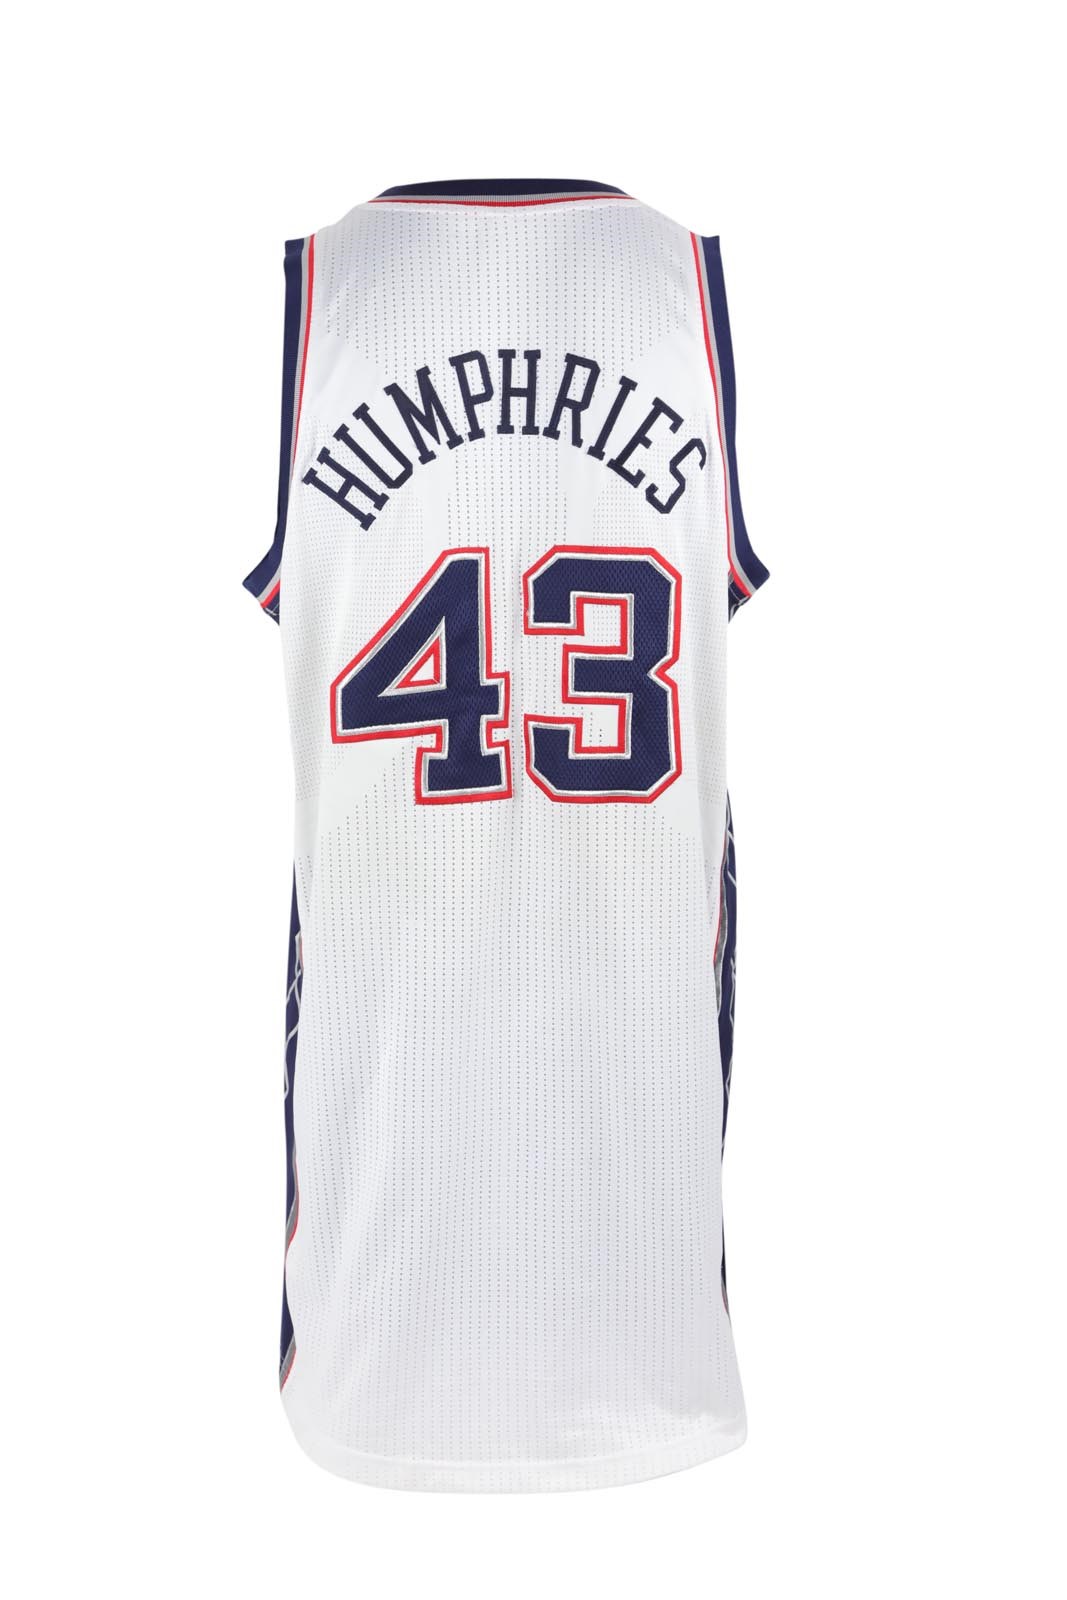 - 2011-12 Kris Humphries Nets Game Worn Jersey - 35th Anniversary Patch (Steiner)